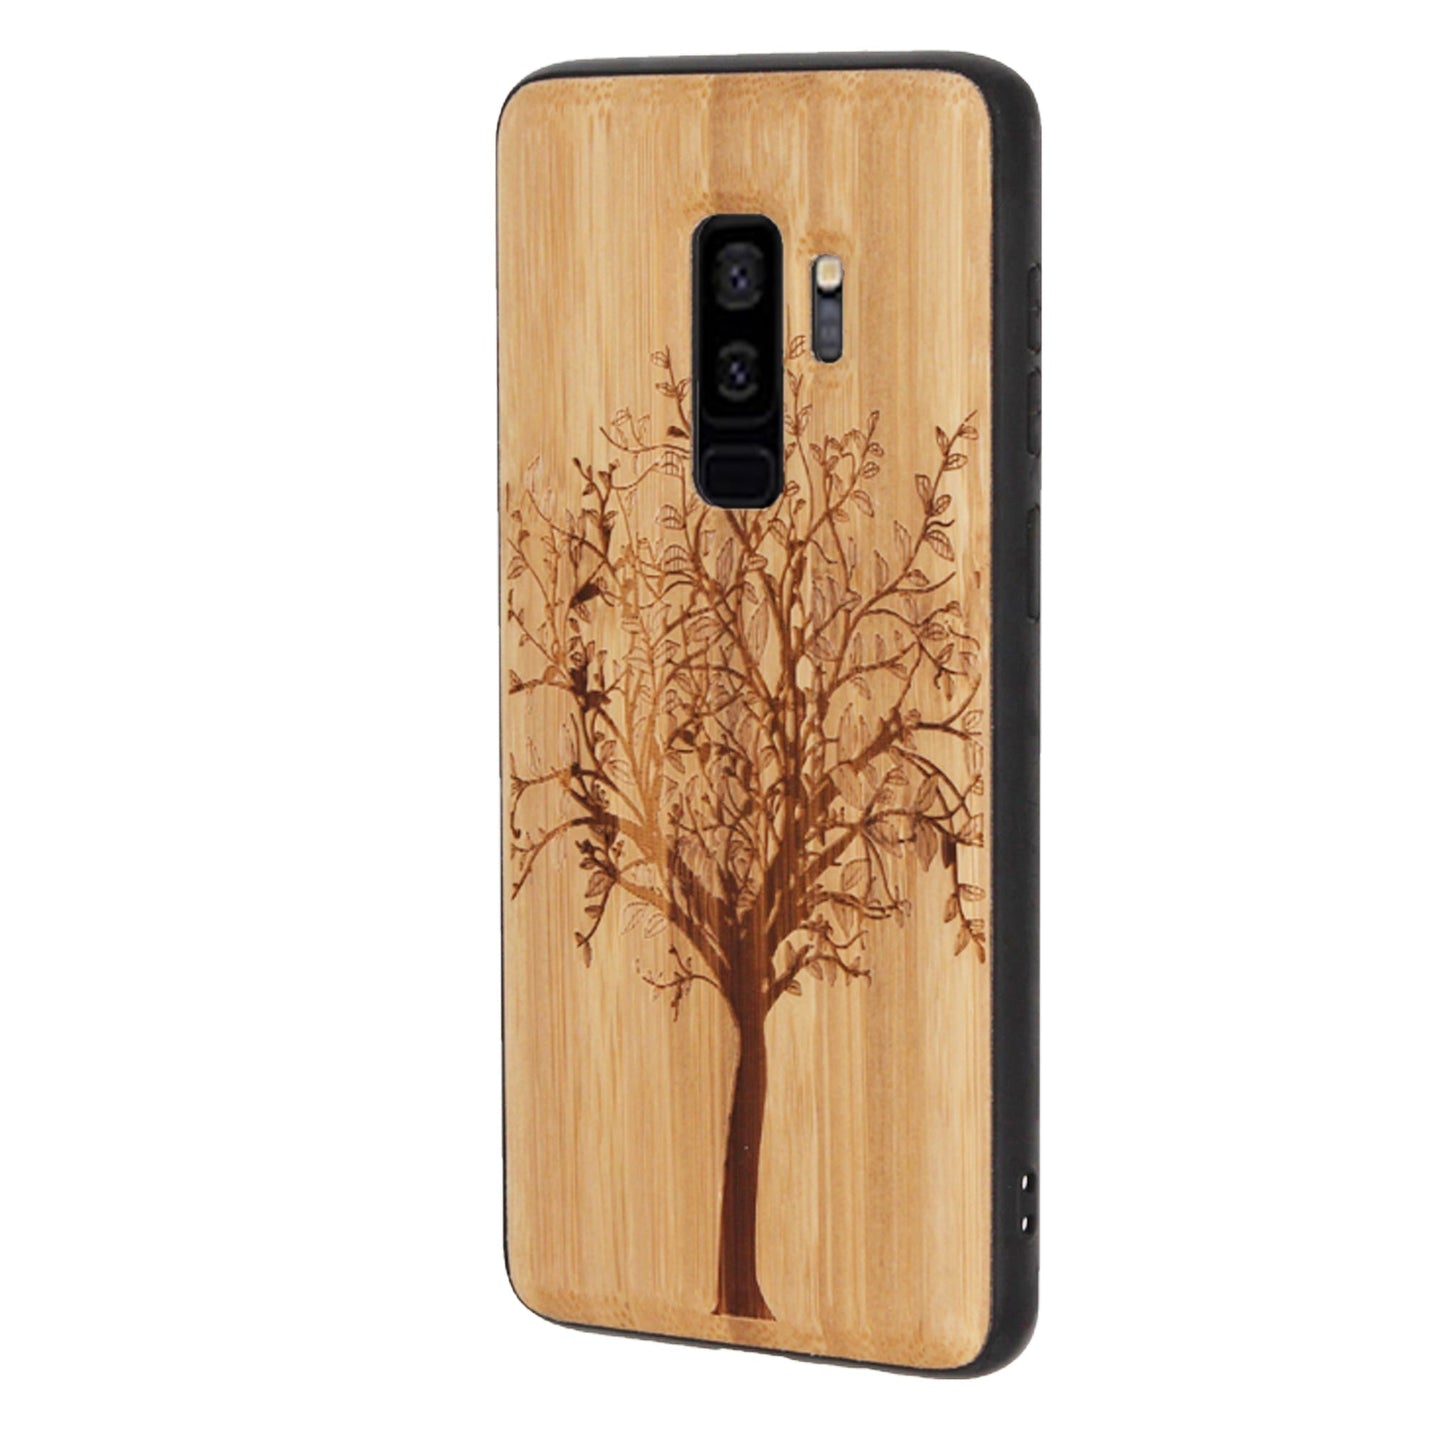 Coque Eden Tree of Life en bambou pour Samsung Galaxy S9 Plus